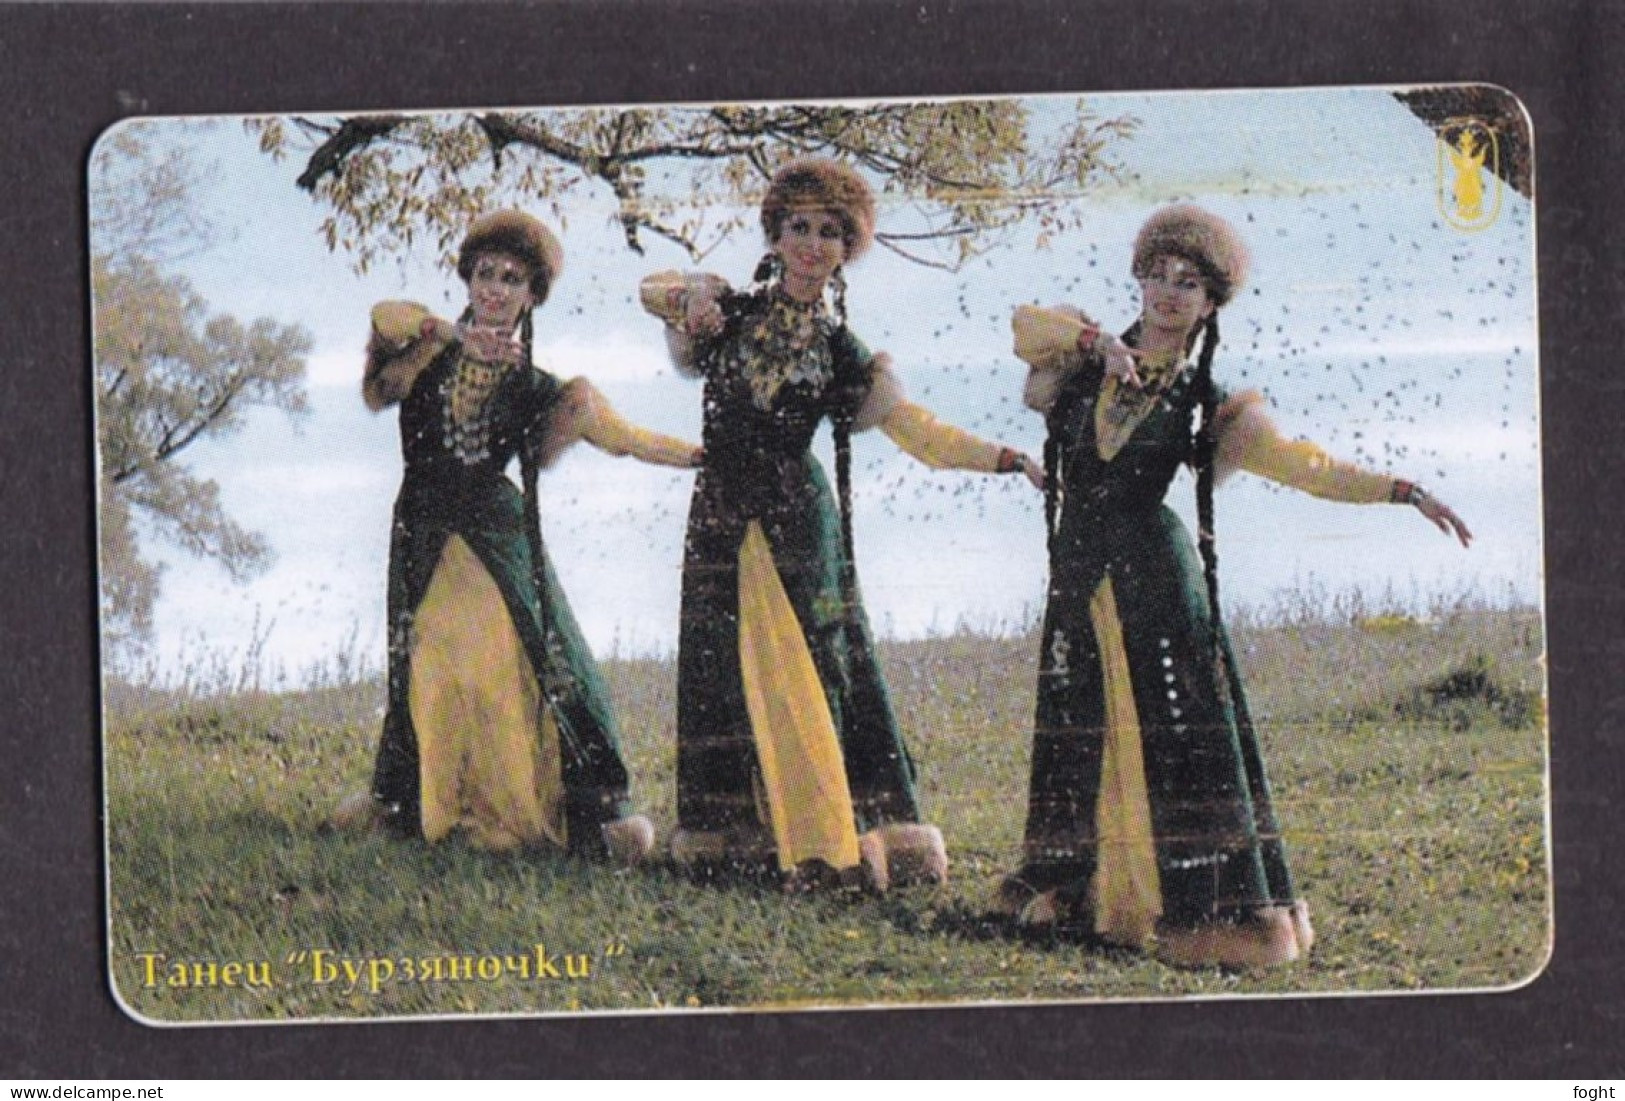 2002 Russia Bashinformsvyaz-Ufa,Dance "Byrzyanochki",90 Units Card,Col:RU-BIS-V-008A - Russie